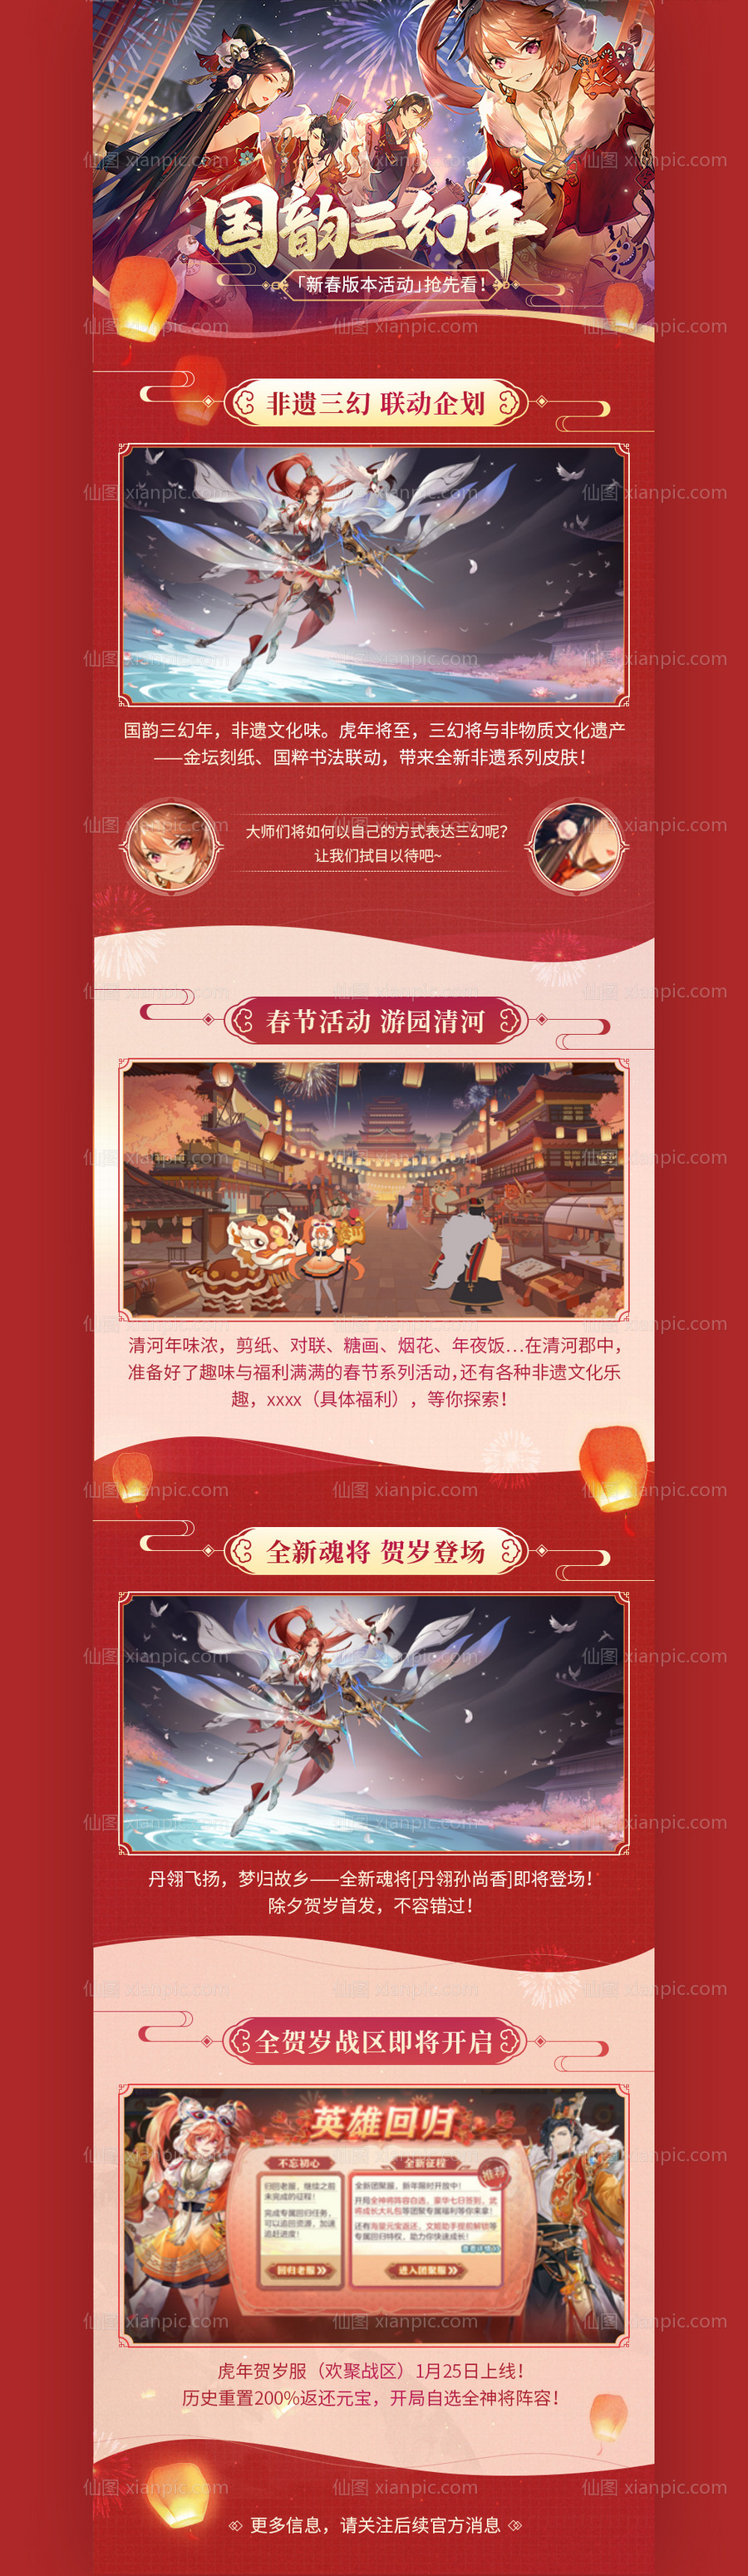 素材乐-游戏UI春节营销活动长图专题设计